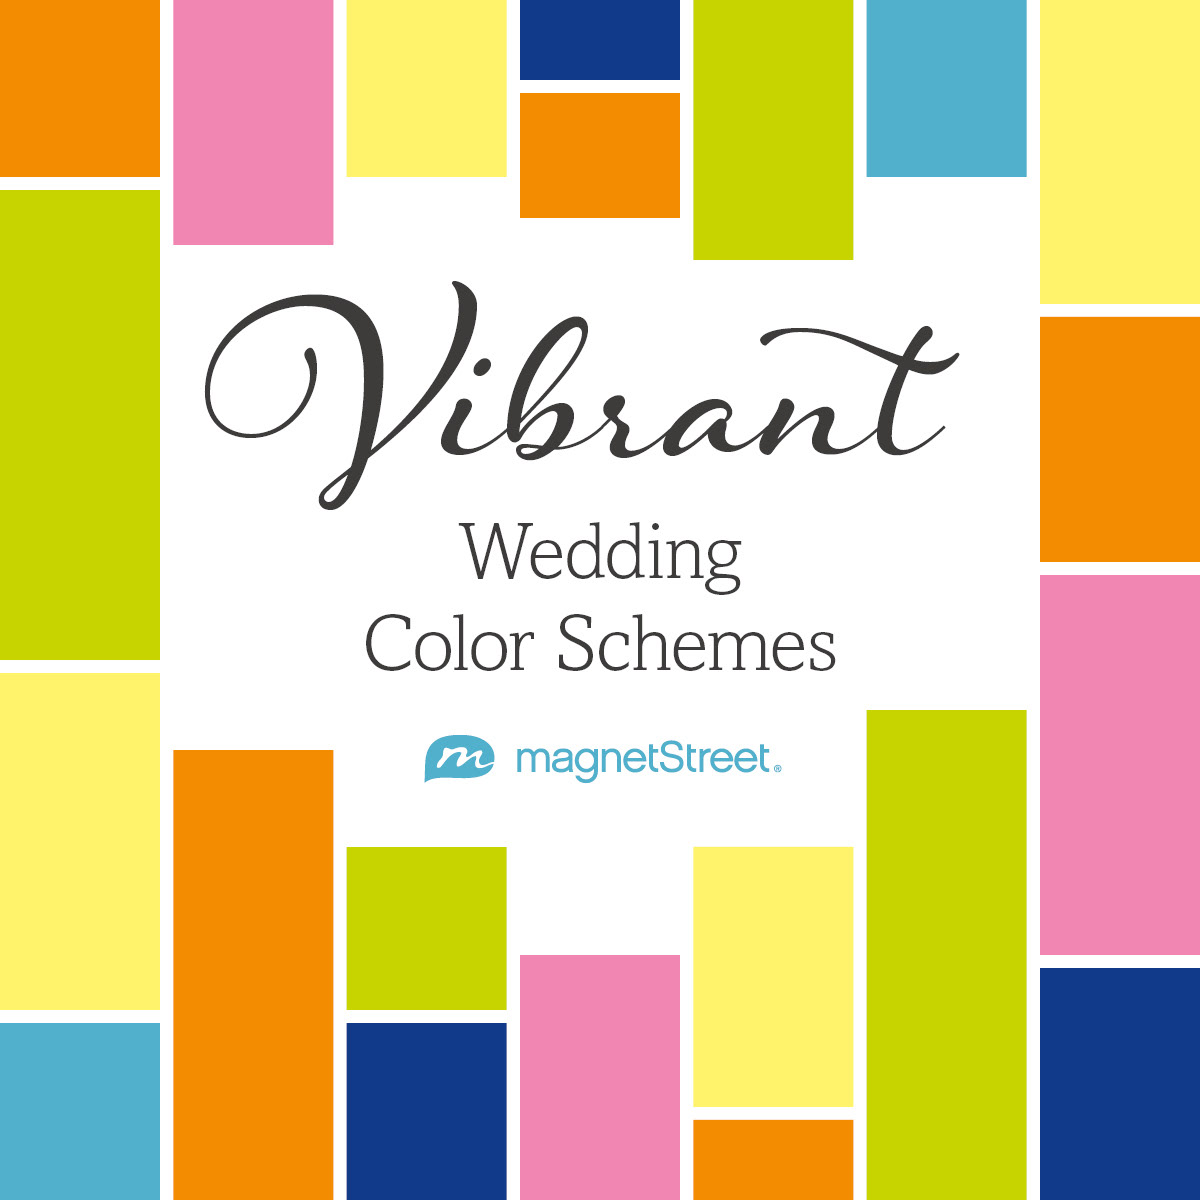 Weddings web resource Layout google ads